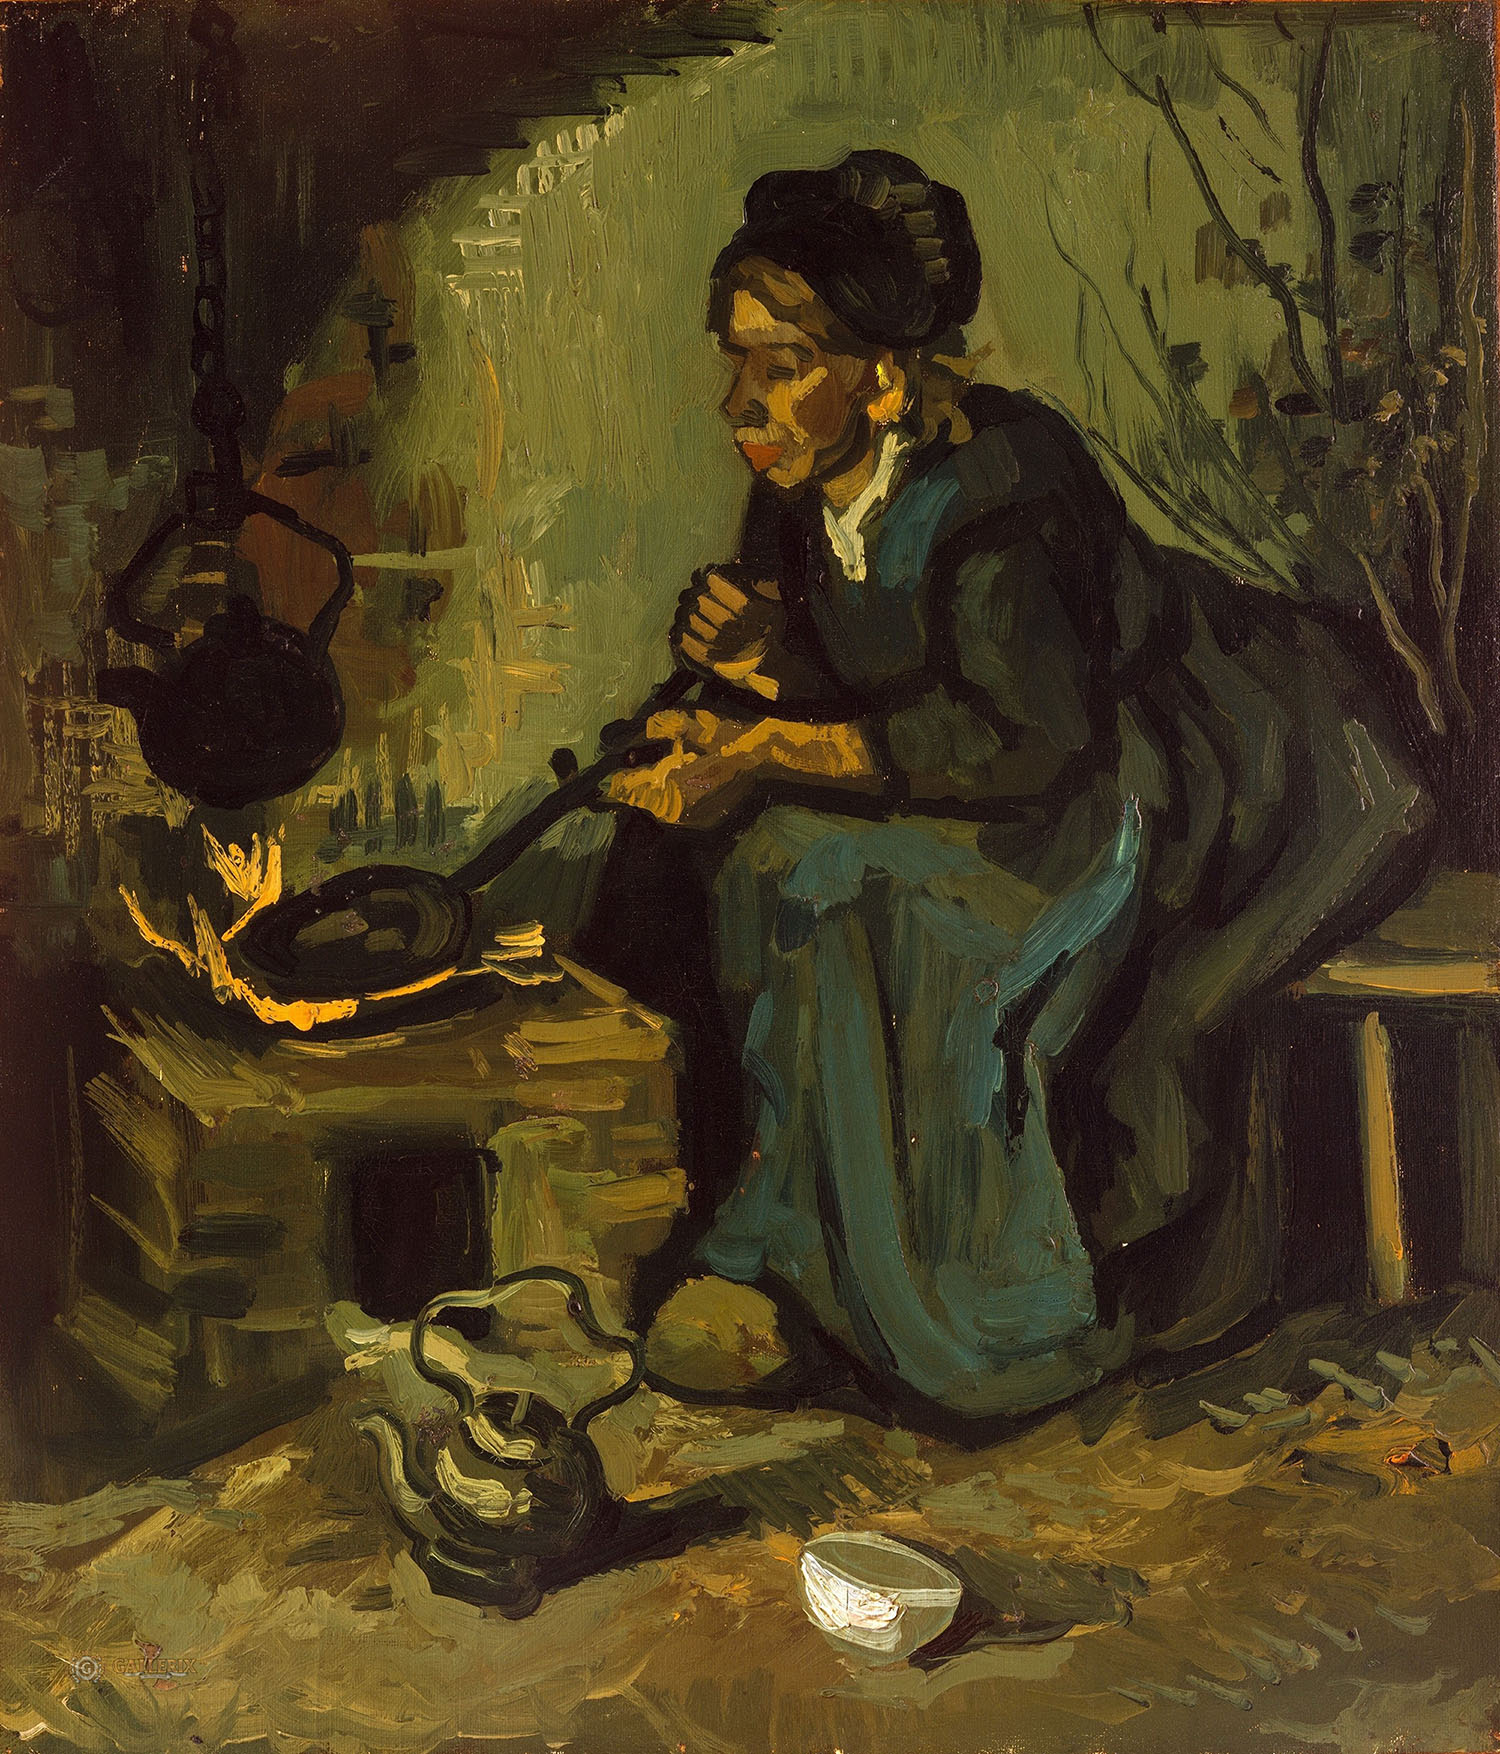 Винсент Ван Гог. "Крестьянка, готовящая на огне". 1885. Музей Метрополитен, Нью-Йорк.